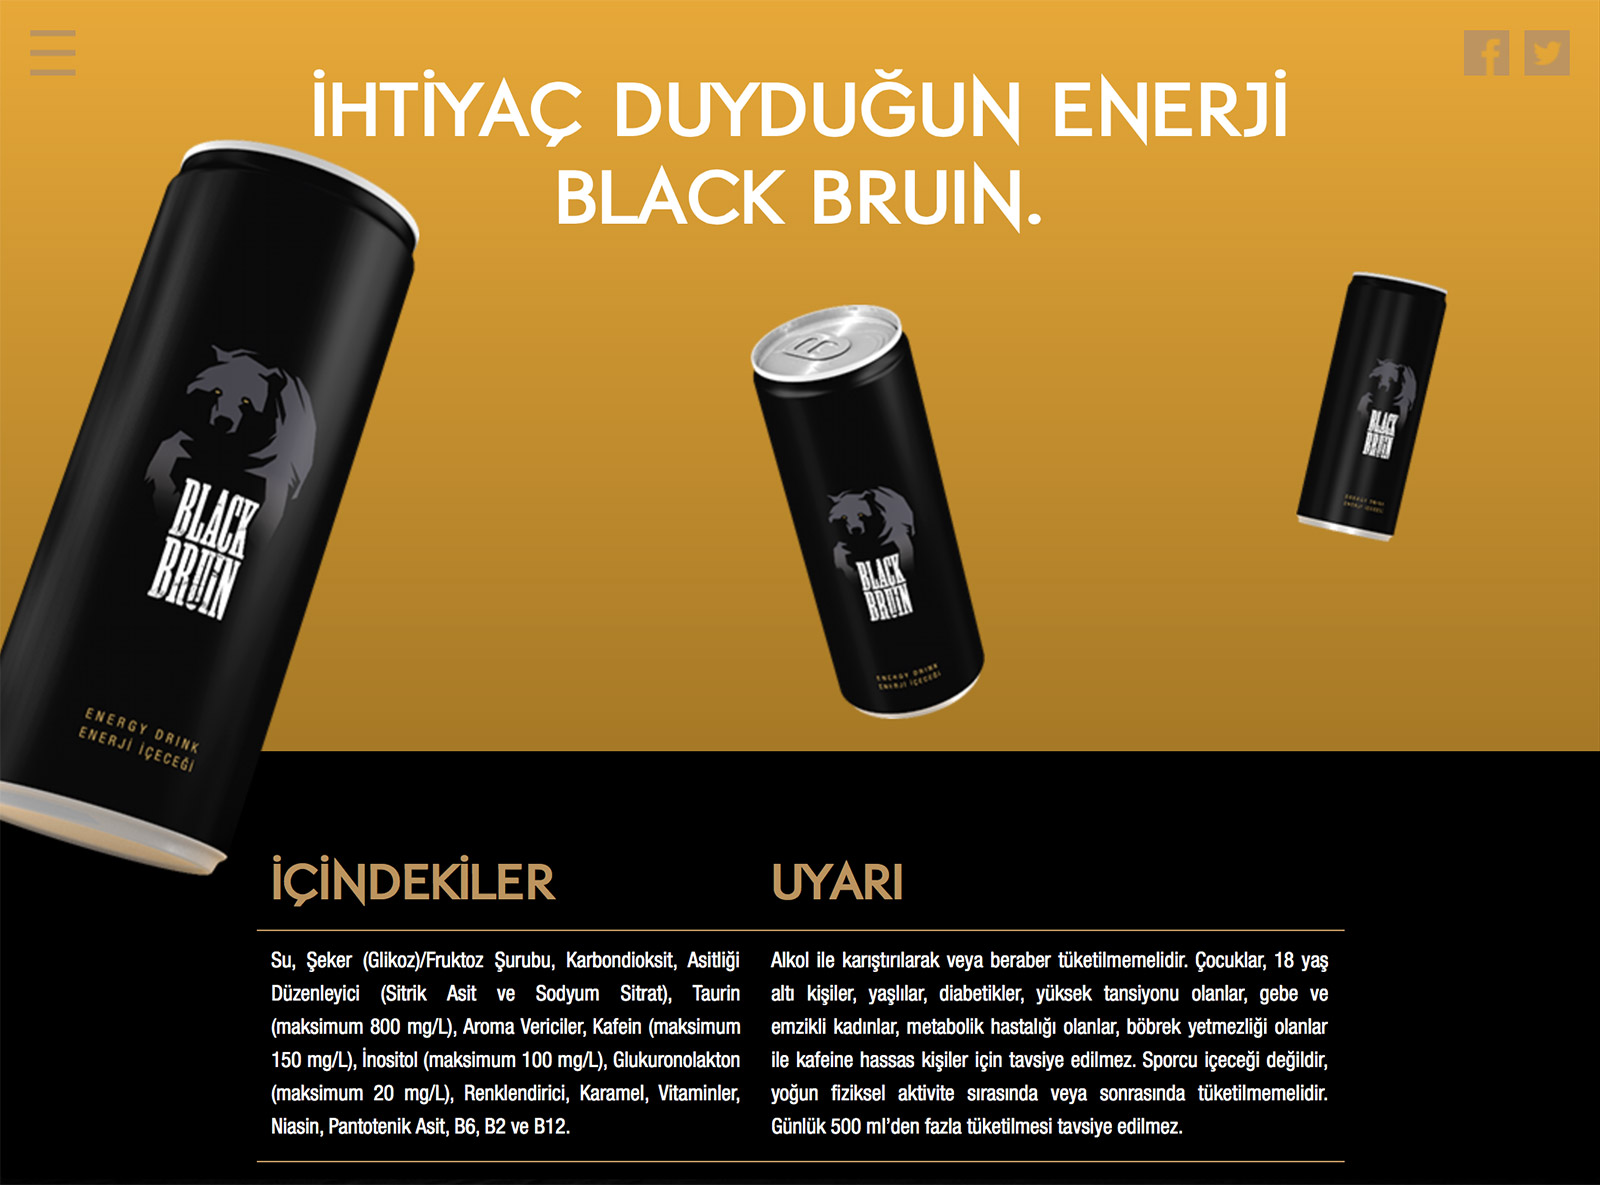 Black Bruin, Niffob, reklam ajansı, dijital ajans, Gürkan Bayındır, Energy Drink, Enerji içeceği, Advertising<br>Social Media<br>Digital Design<br>Package Design<br>...